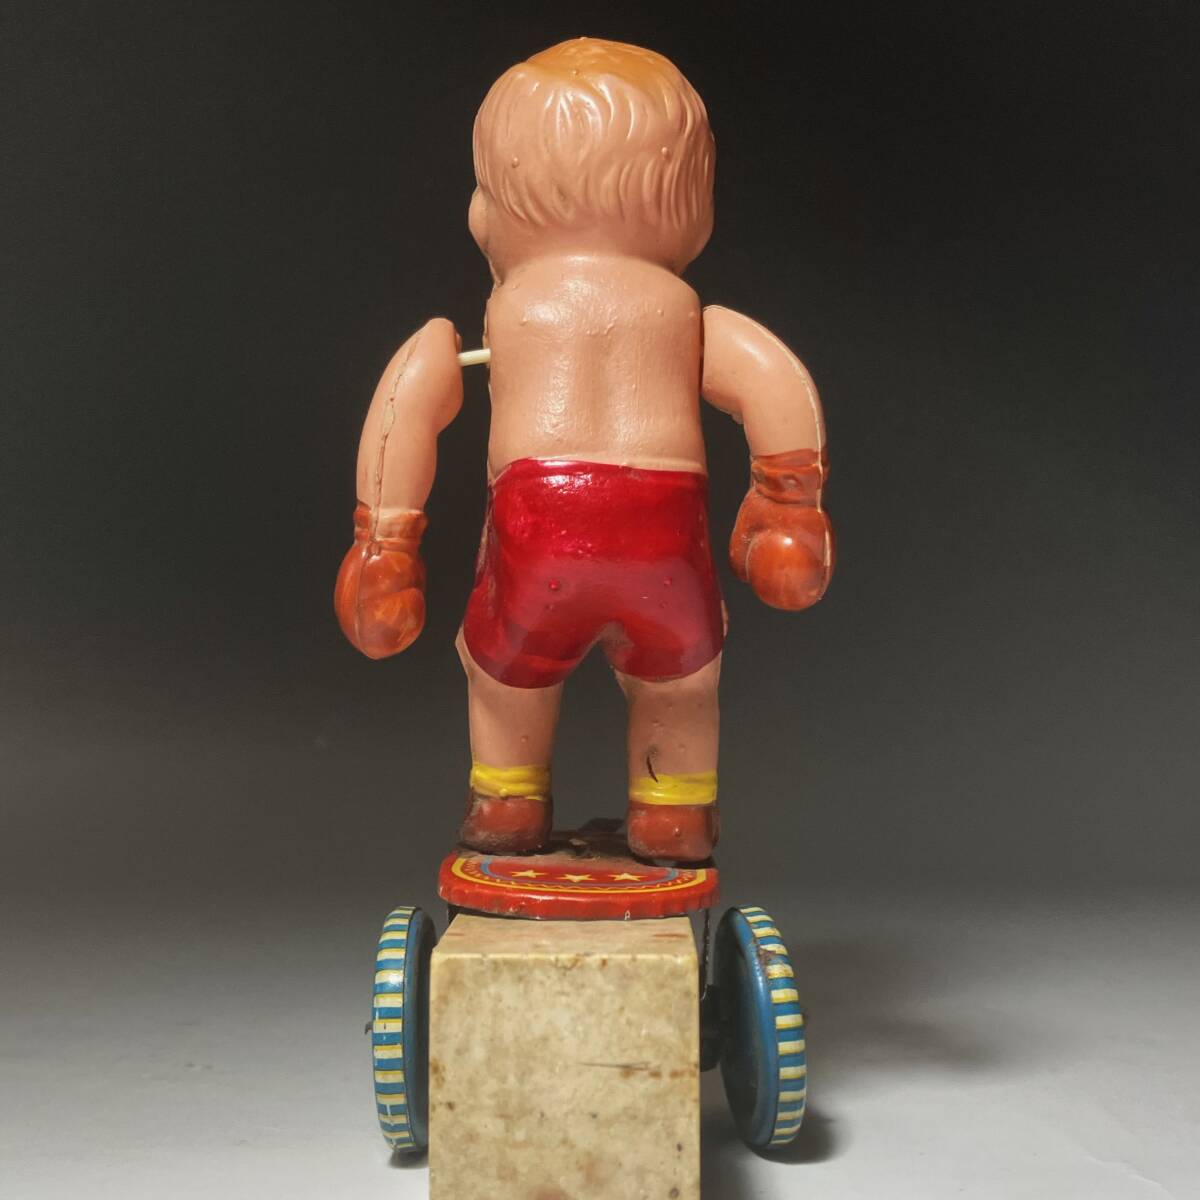  поставка со склада // Showa Retro сделано в Японии cell Lloyd кукла Boxer бокс подросток жестяная пластина игрушка // Junk подлинная вещь ценный редкий товар 